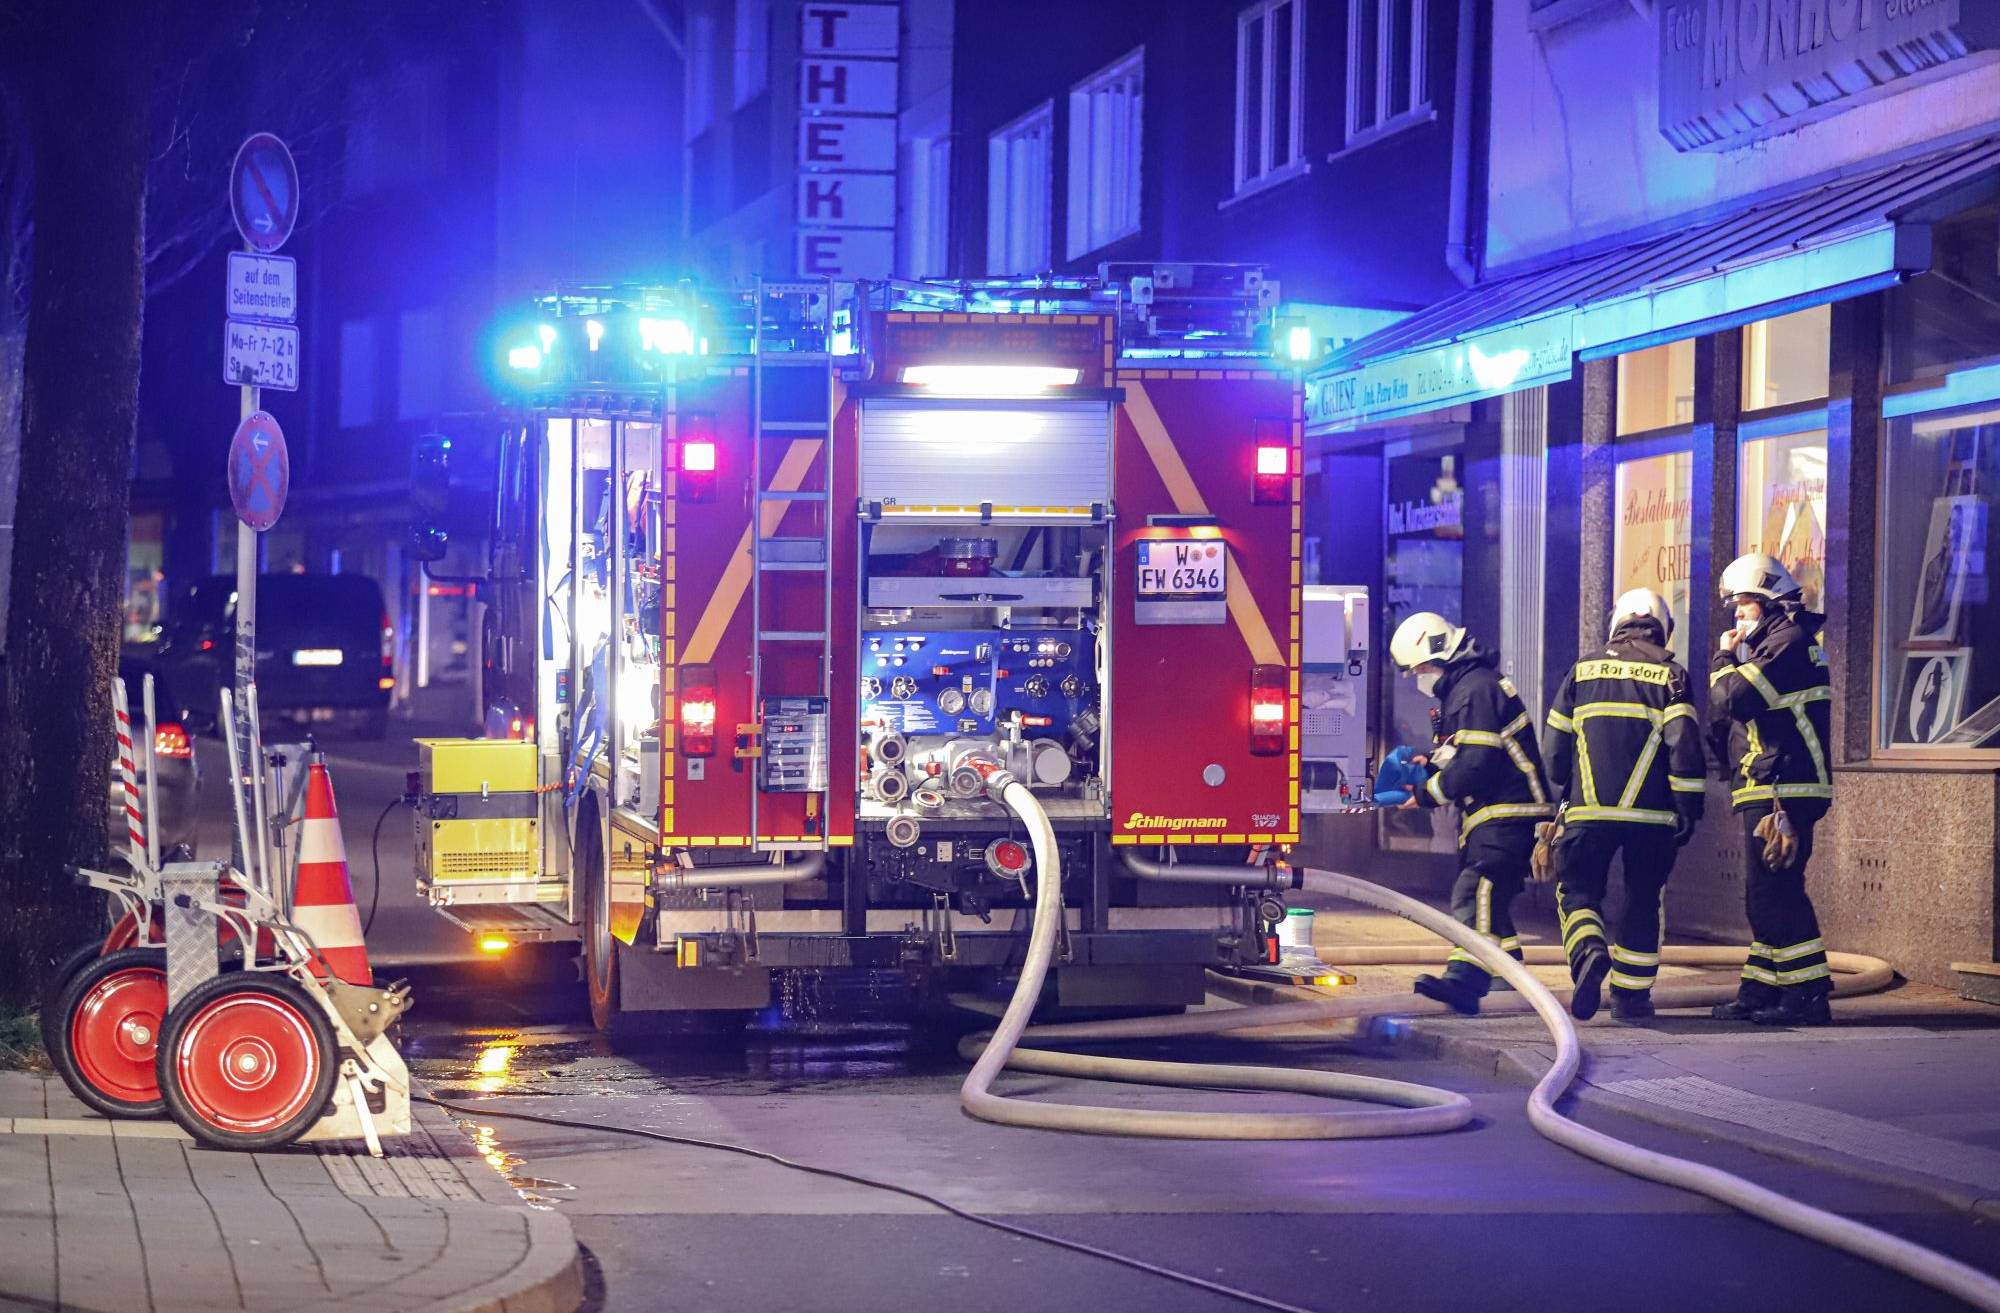 Brandrauch zieht in Bäckerei in Wuppertal-Ronsdorf